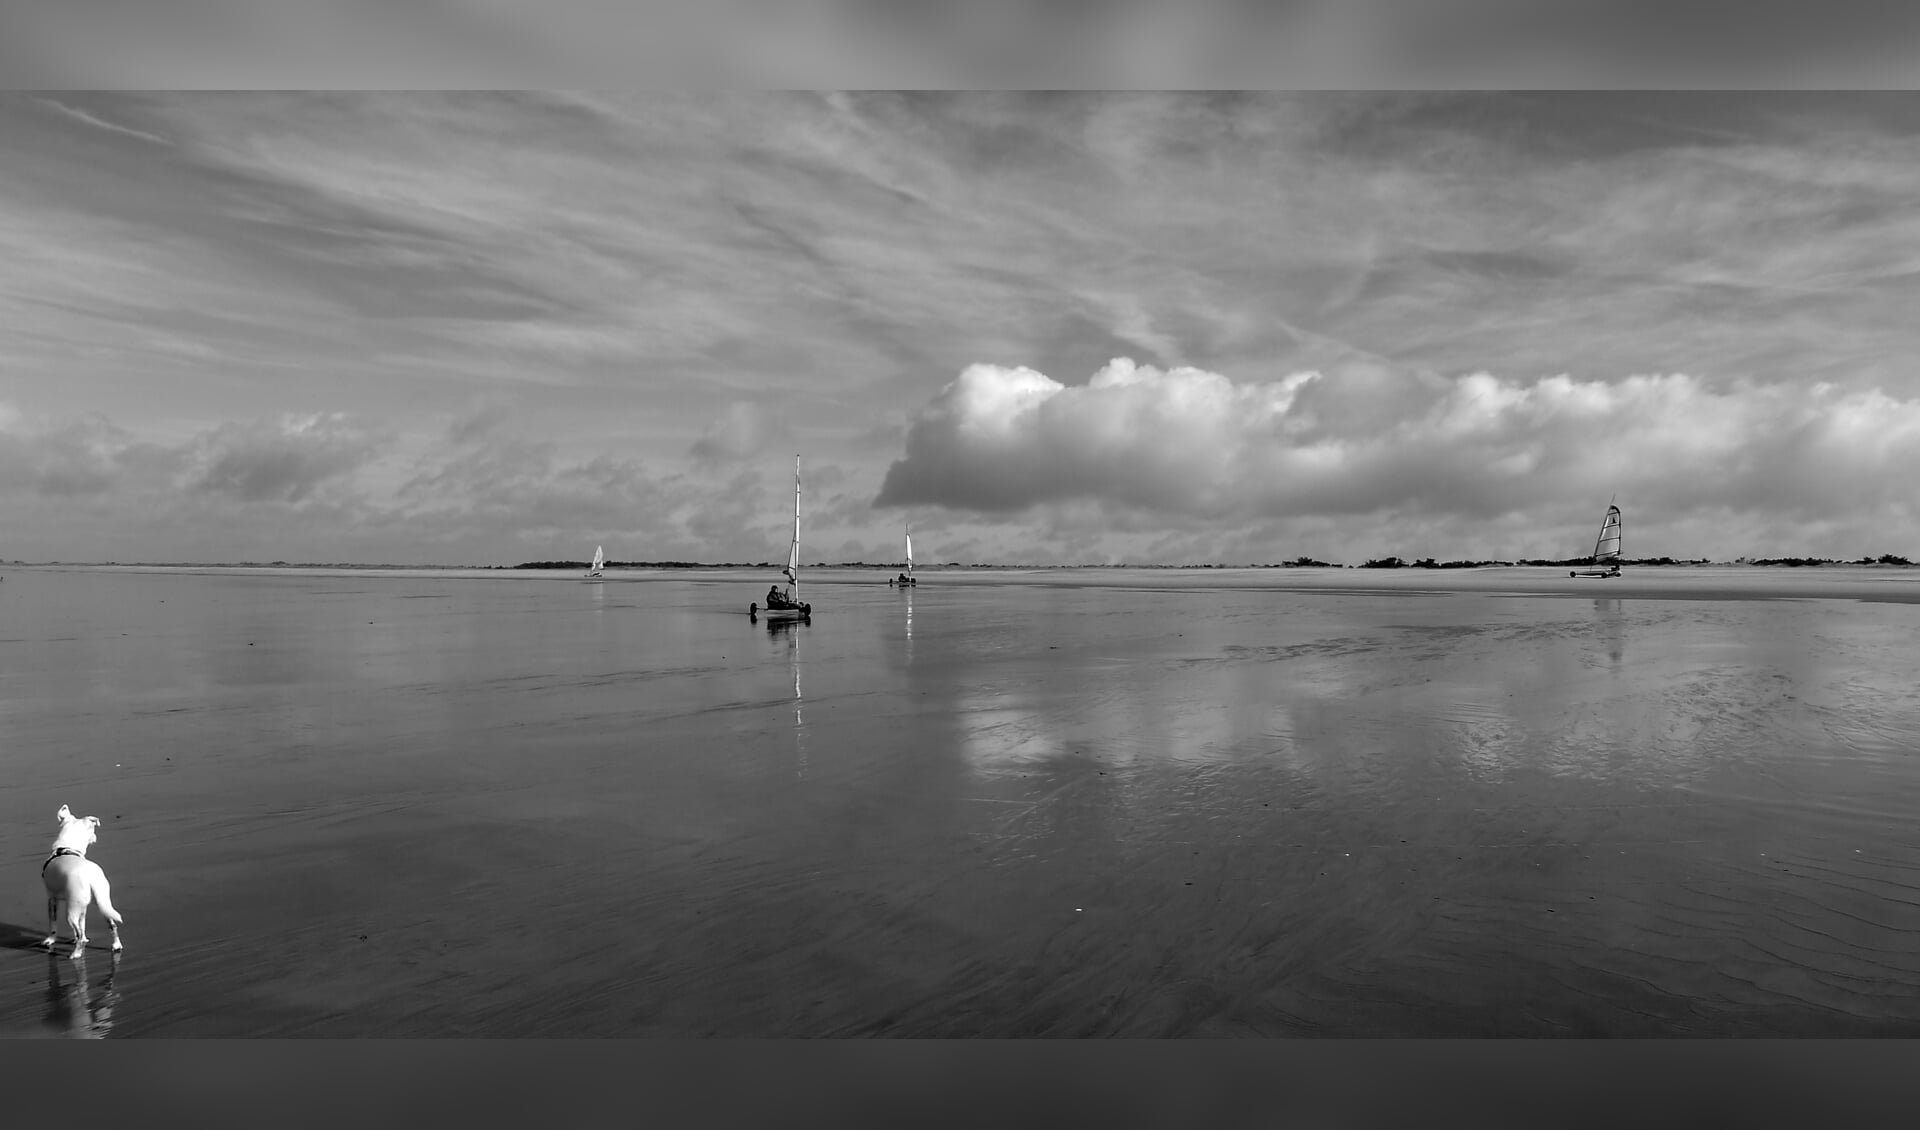 Hond Bliks kijkt naar strandzeilers aan de Atlantische kust. Foto gemaakt in zwart-wit  met een Leica compactcamera, 35 mm.